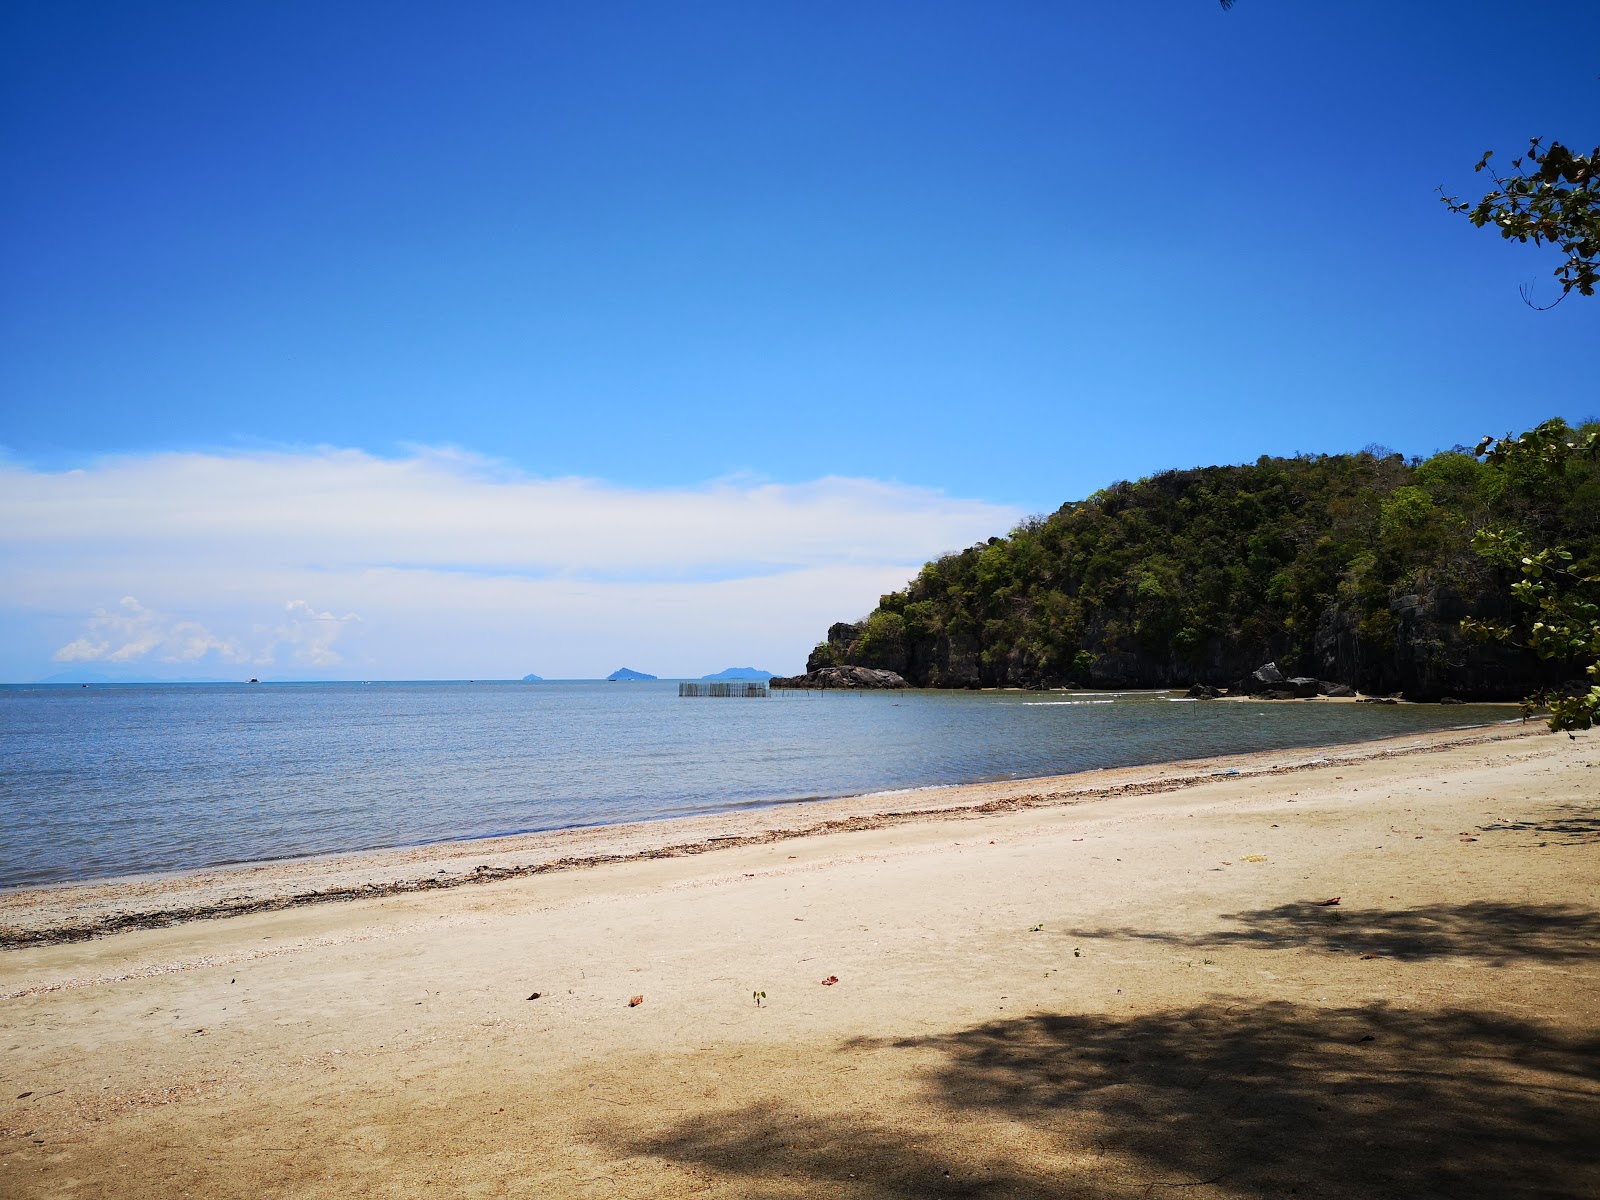 Pak Nam Beach'in fotoğrafı geniş plaj ile birlikte